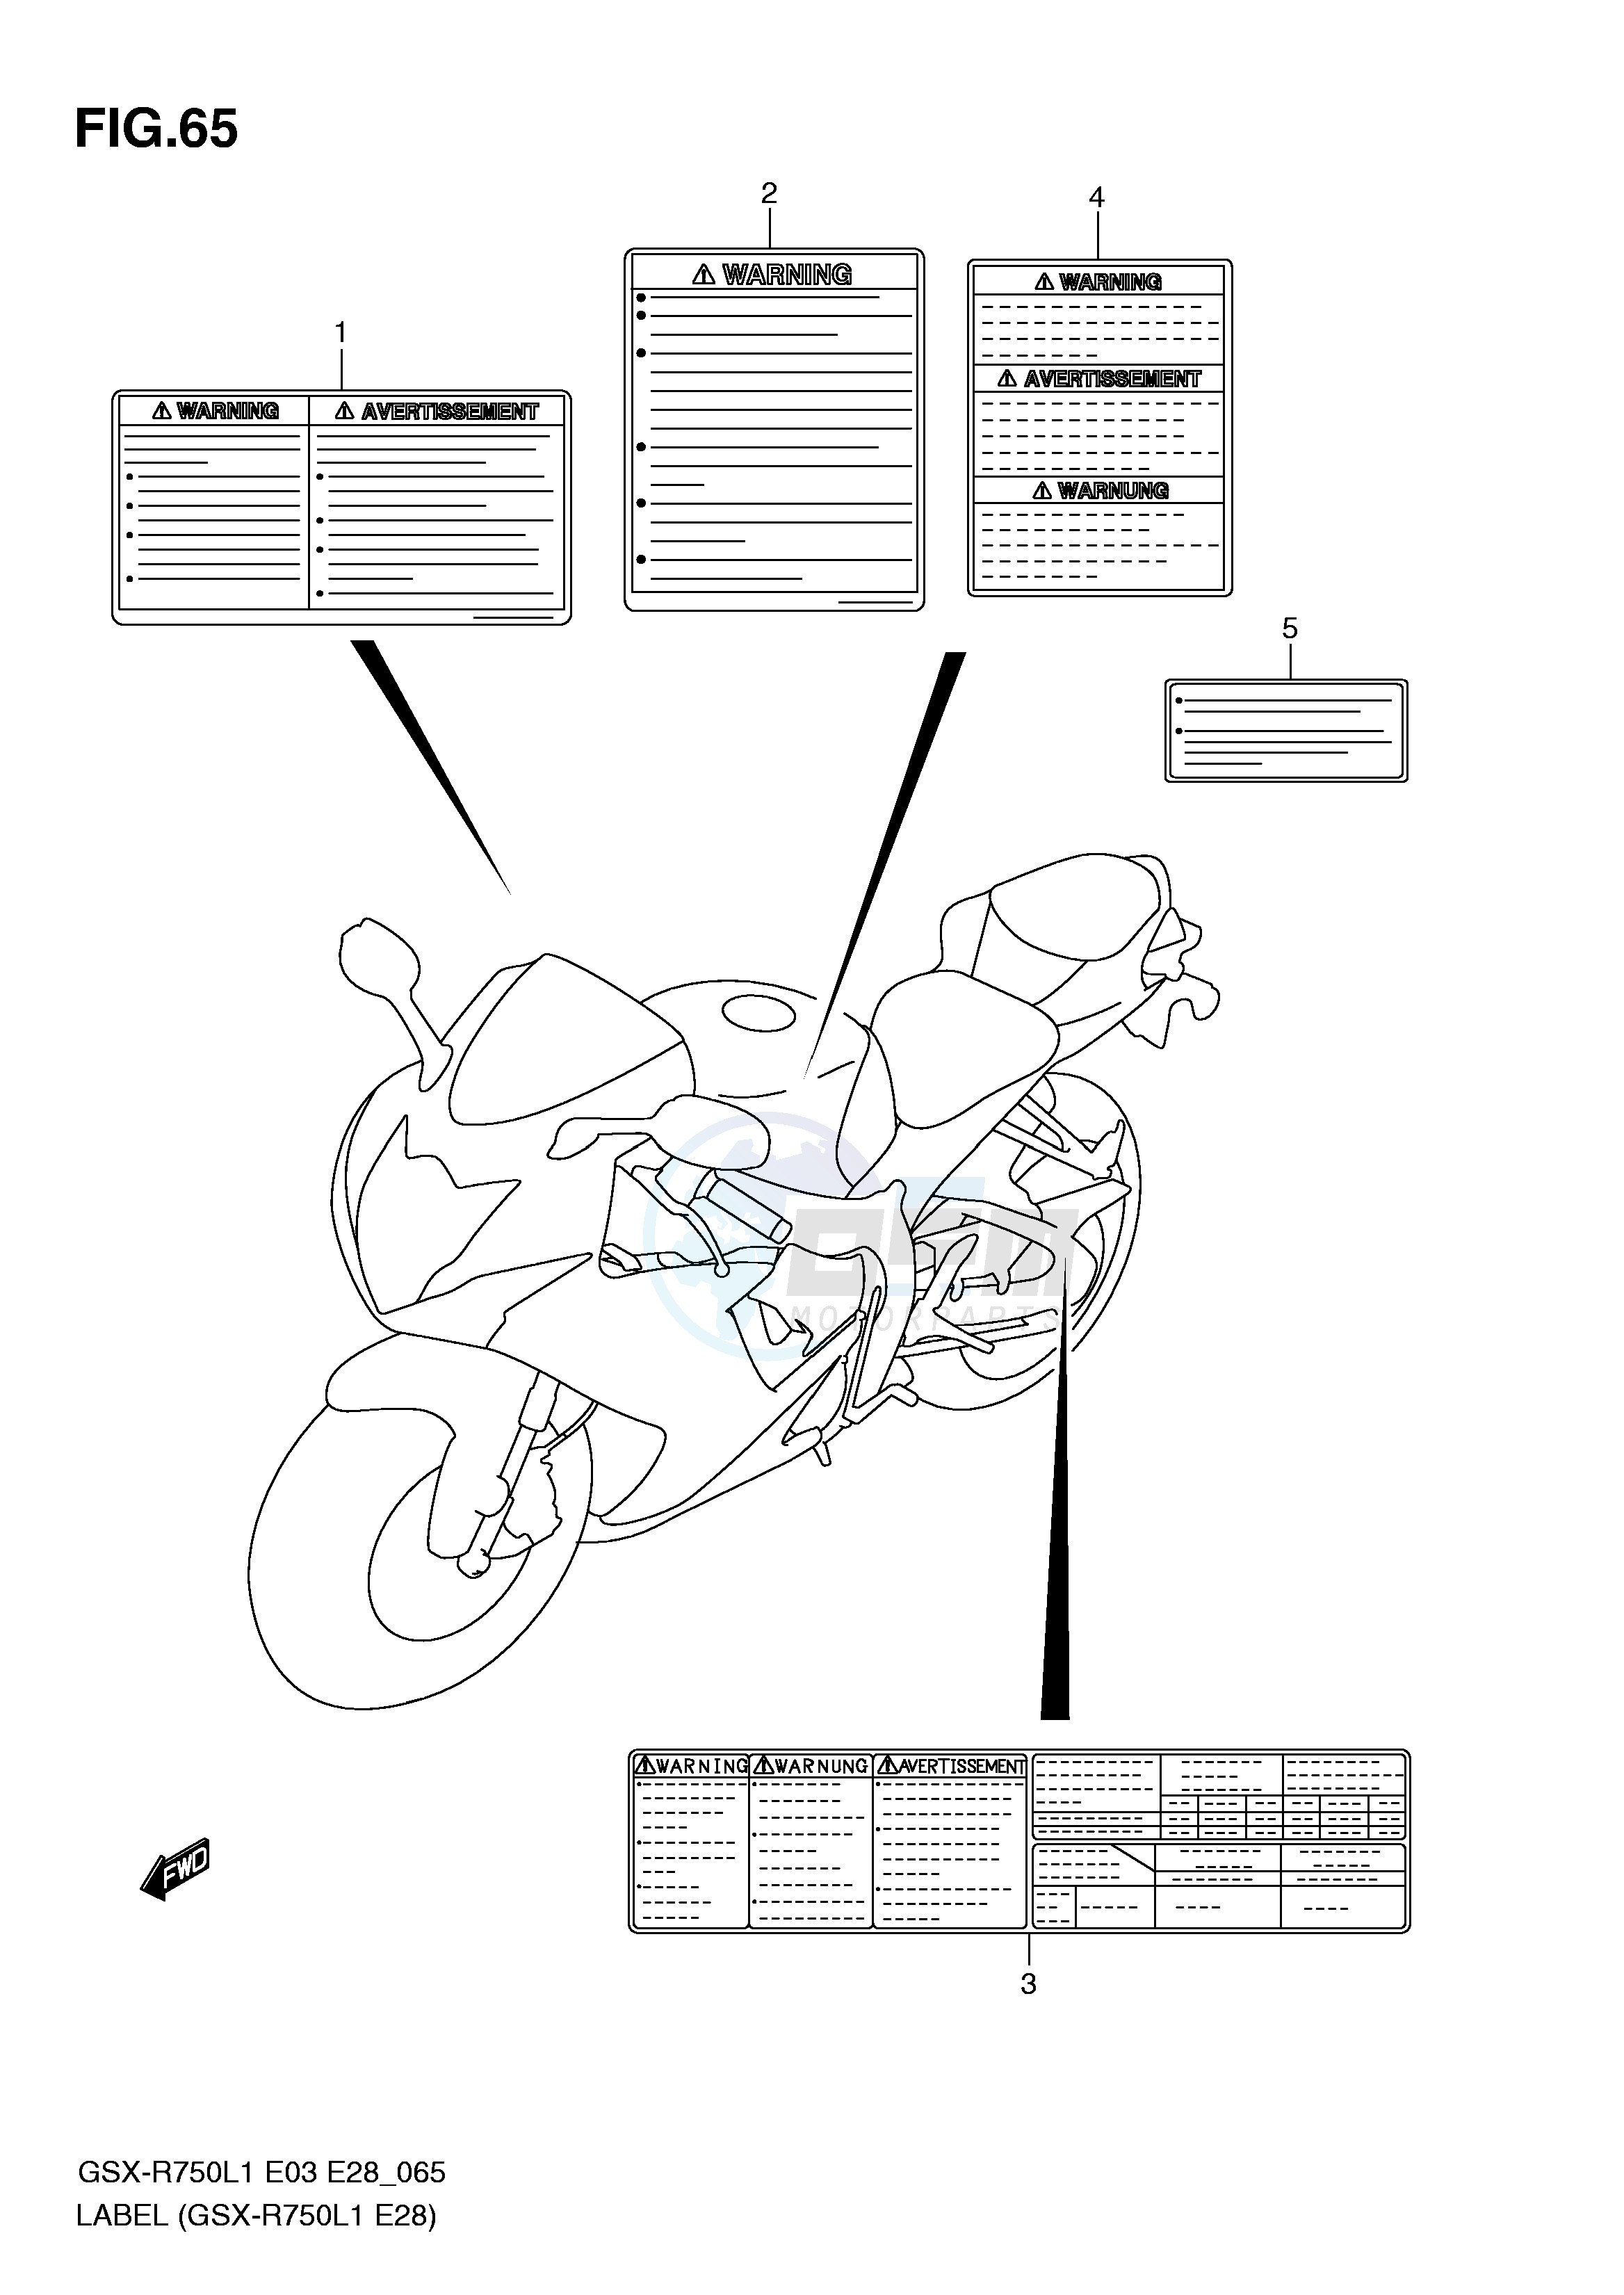 LABEL (GSX-R750L1 E28) blueprint